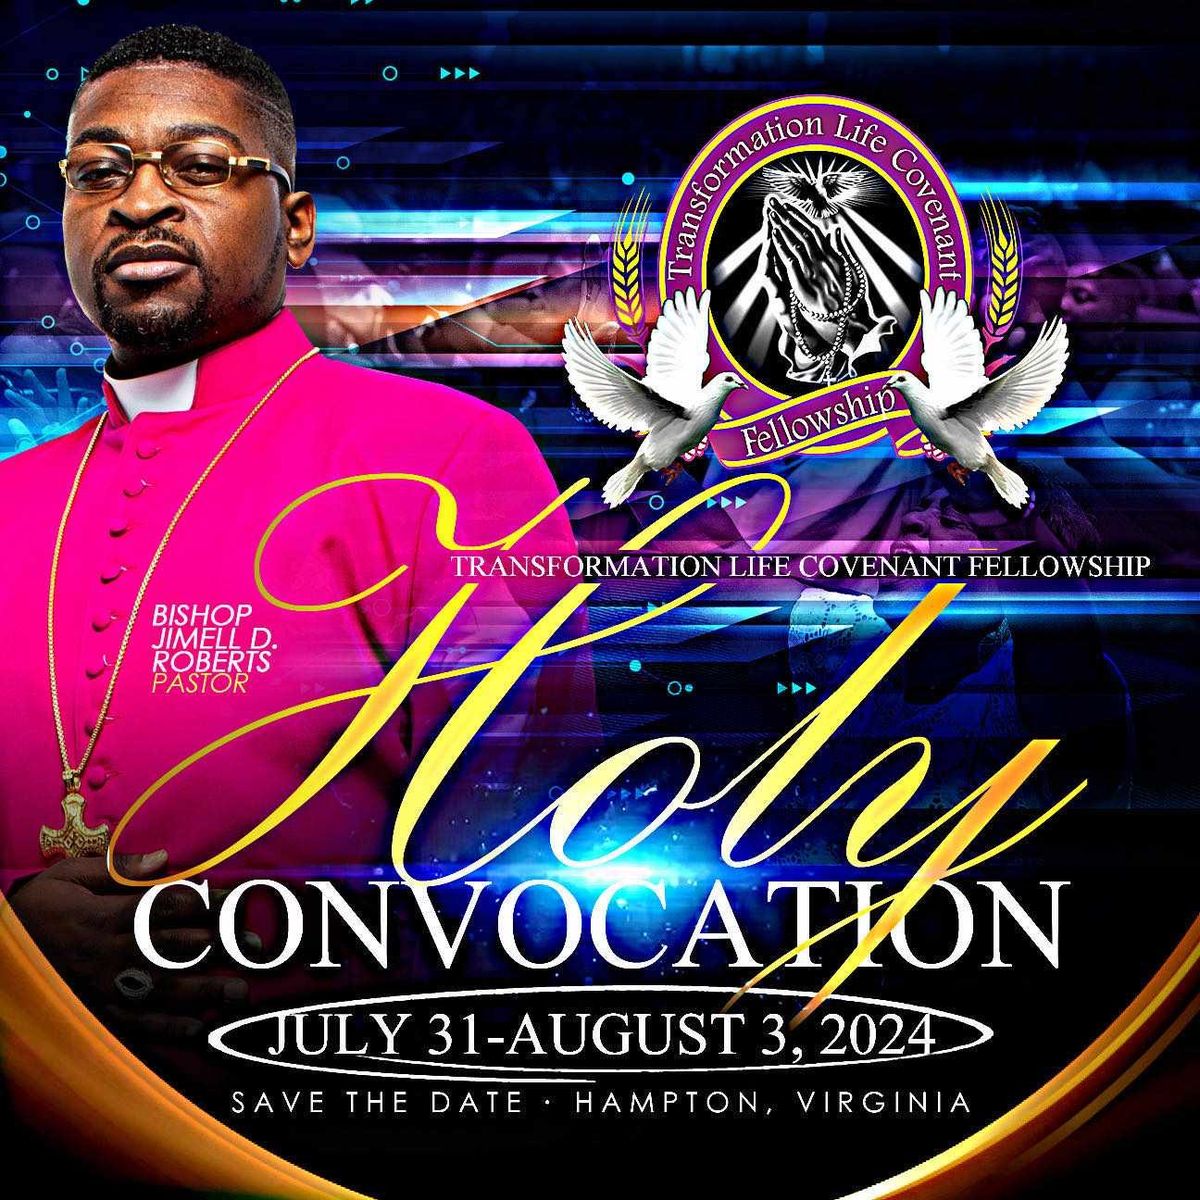 TLCF Holy Convocation 